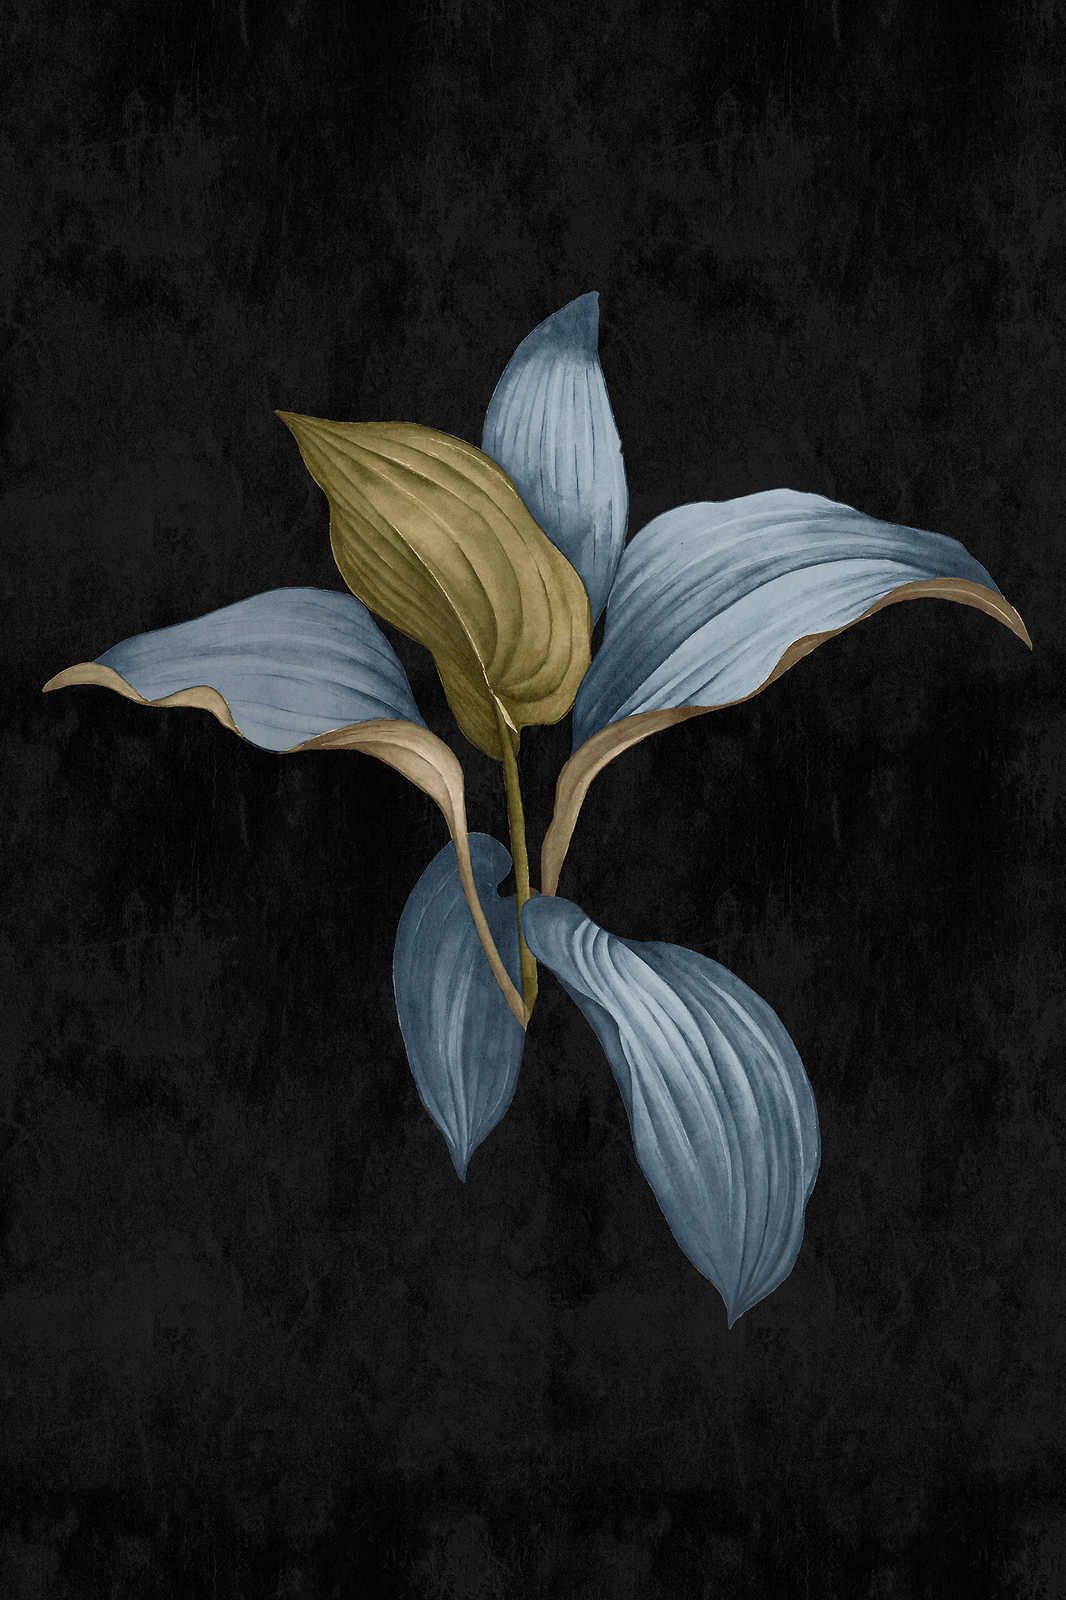             Fiji 3 - Donker canvas schilderij Botanisch ontwerp in blauw & groen - 0.60 m x 0.90 m
        